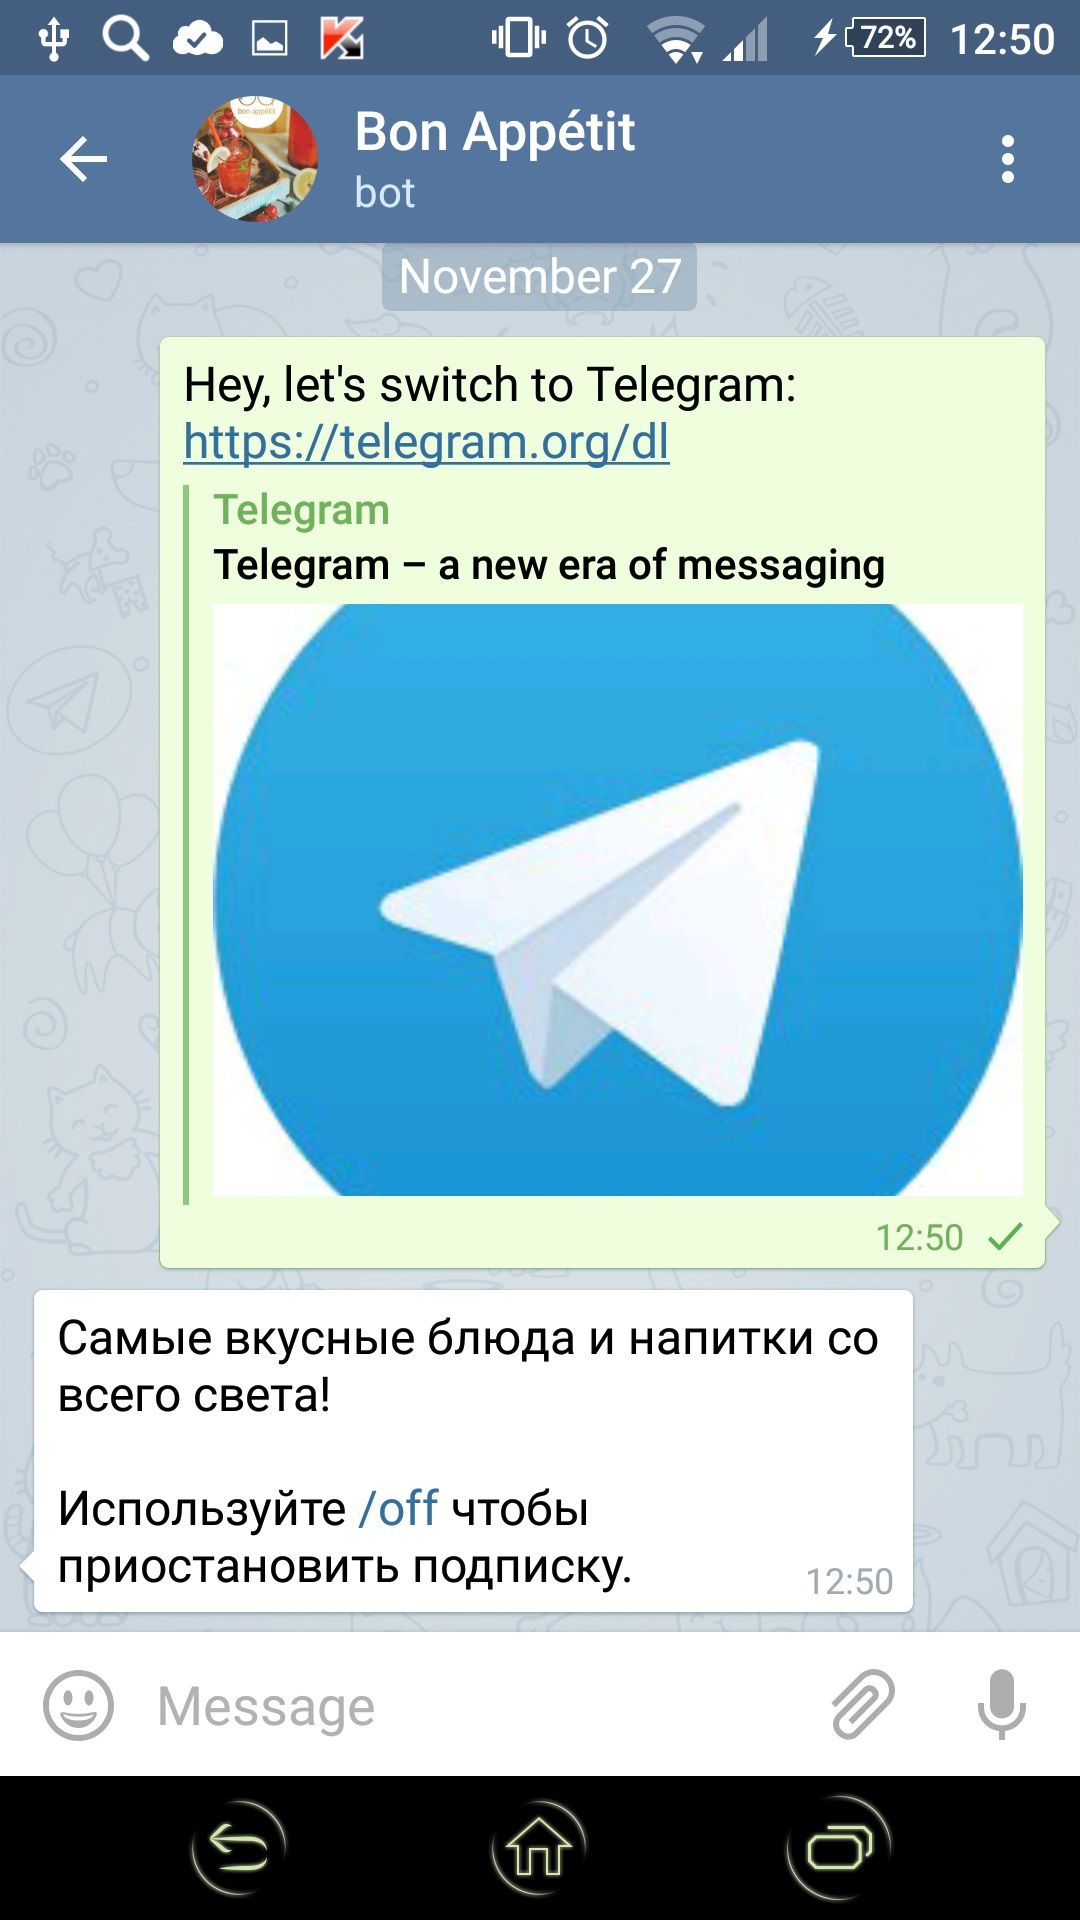 Скачать приложение телеграмм русской версии фото 102